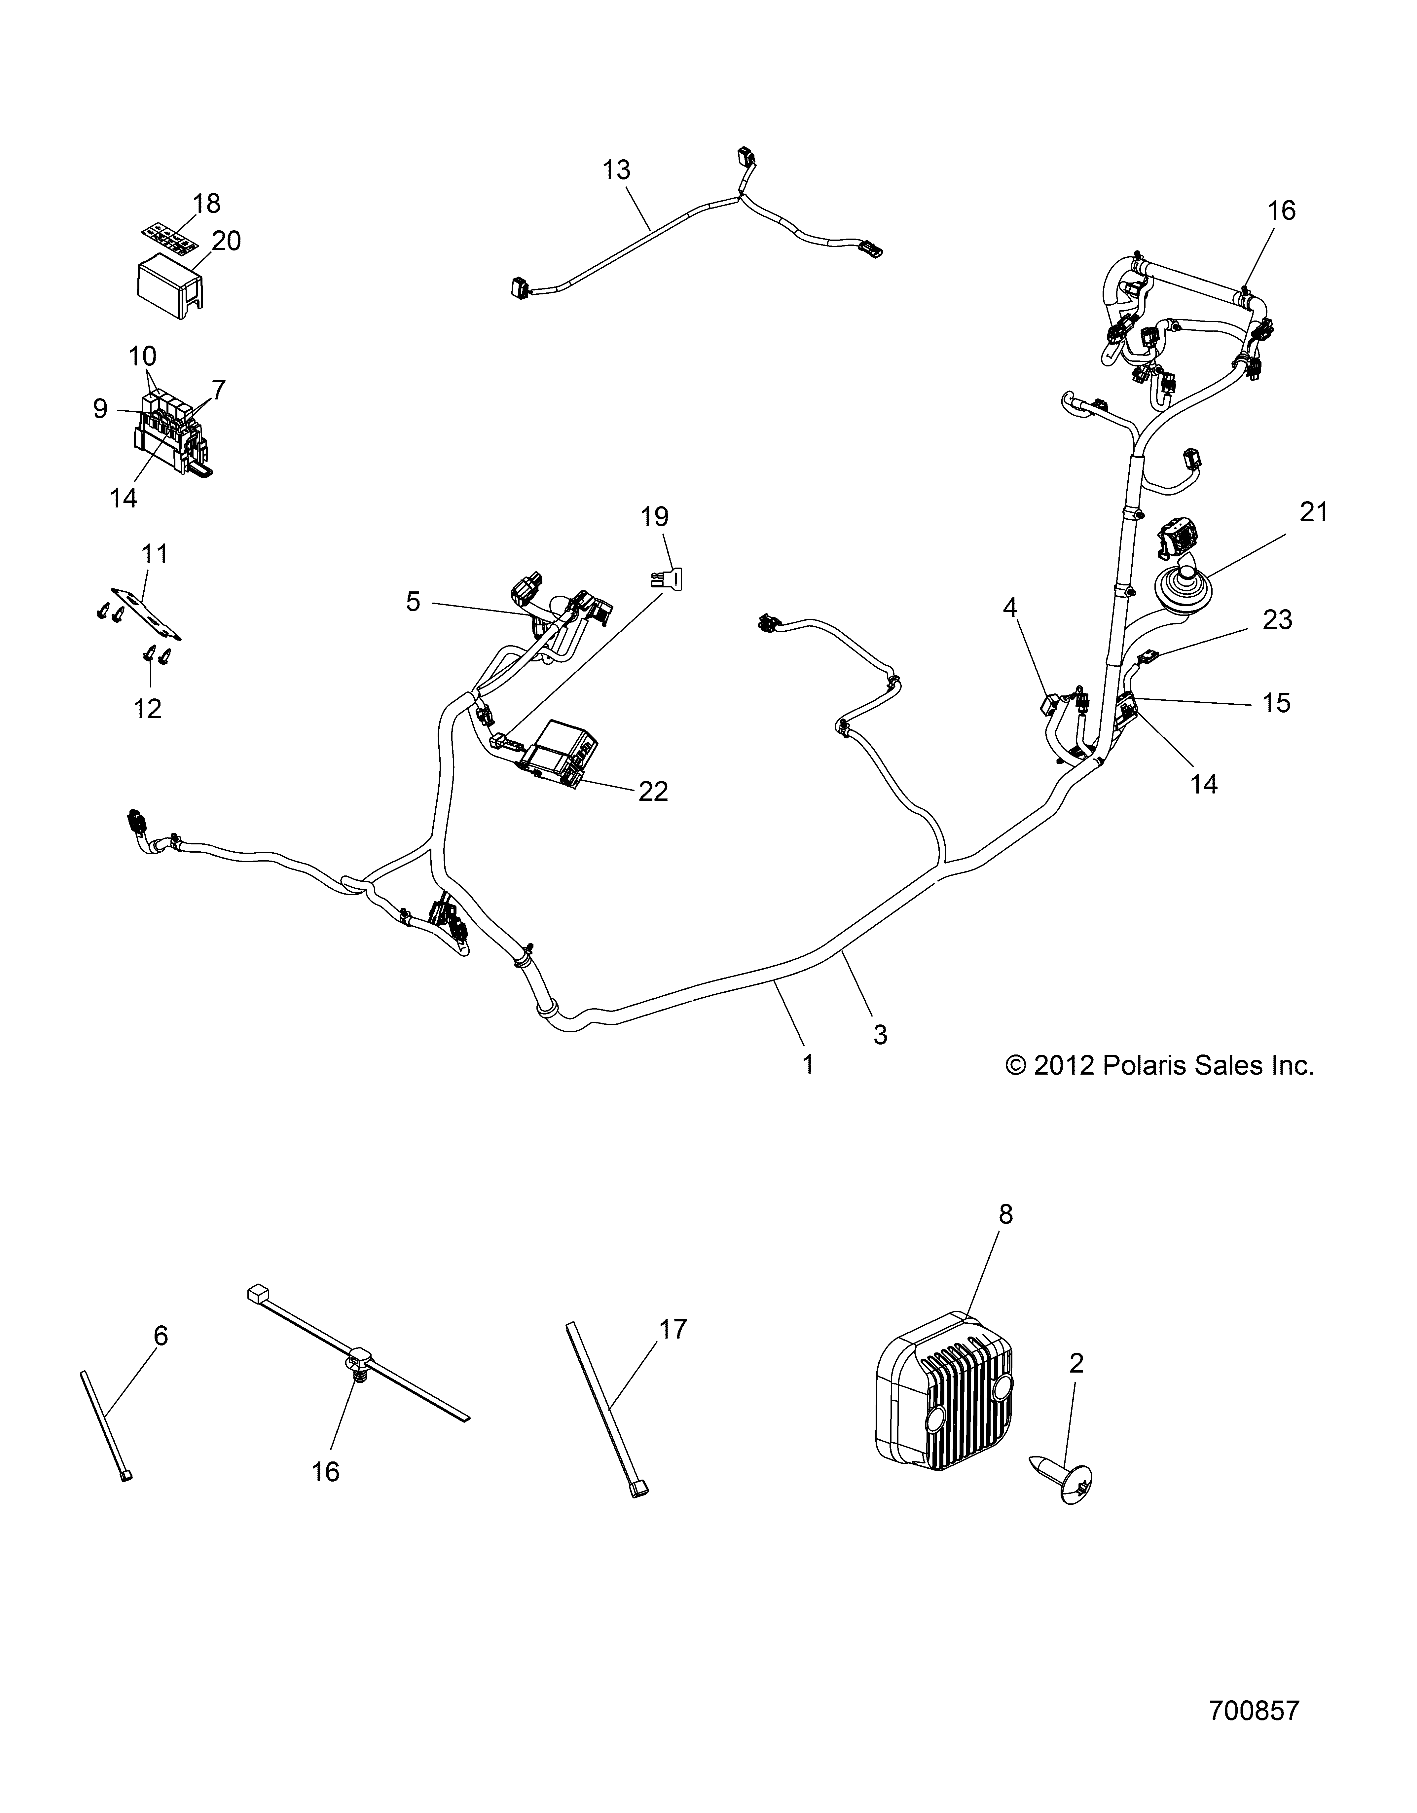 Foto diagrama Polaris que contem a peça 7177211